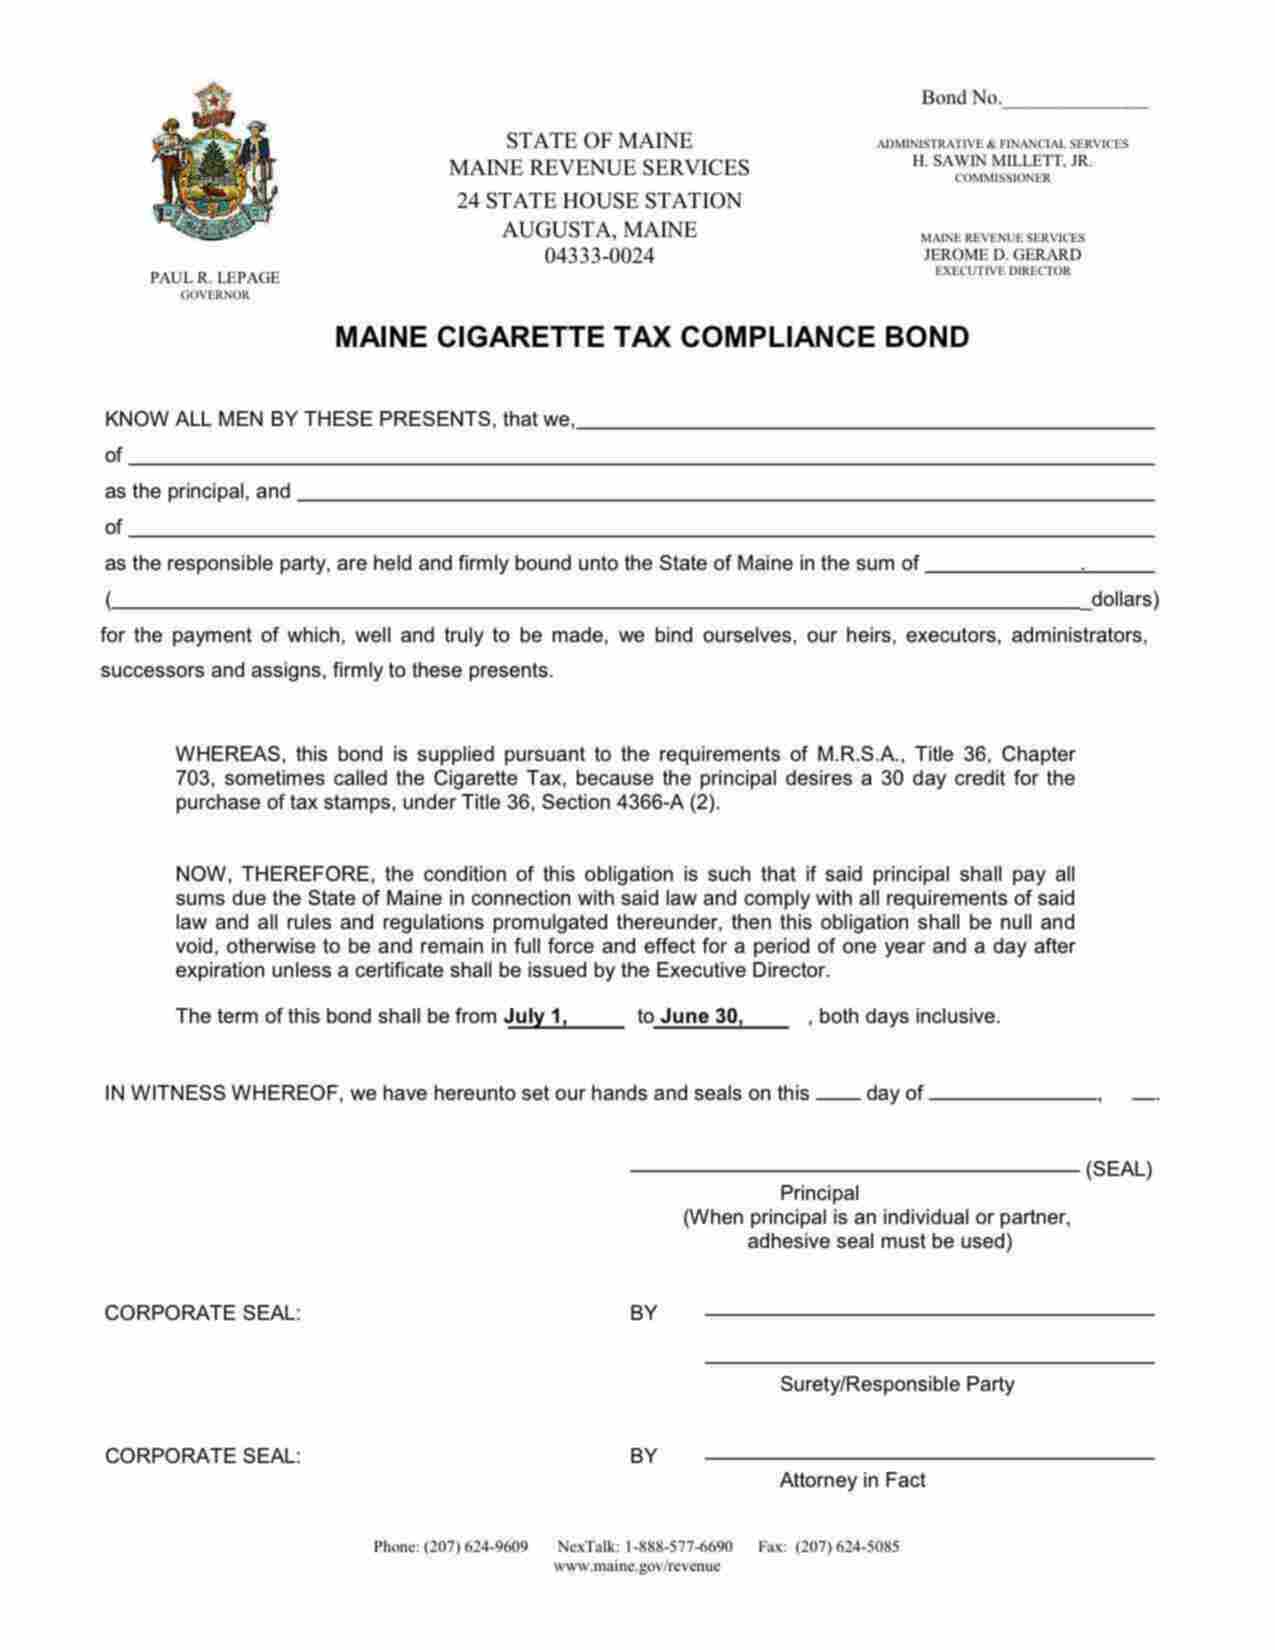 Maine Cigarette Tax Compliance Bond Form